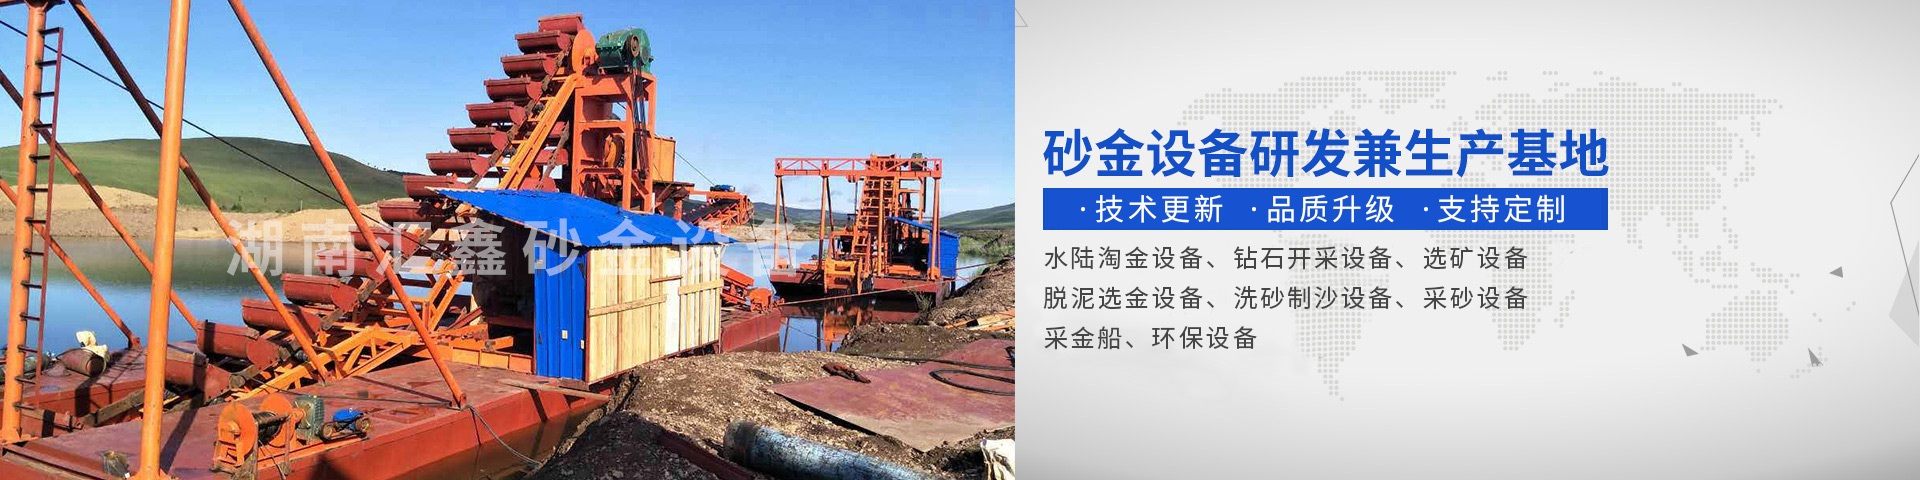 浏阳汇鑫工贸有限公司——淘金设备厂家|沙金设备定制|淘金船设备|钻石开采设备